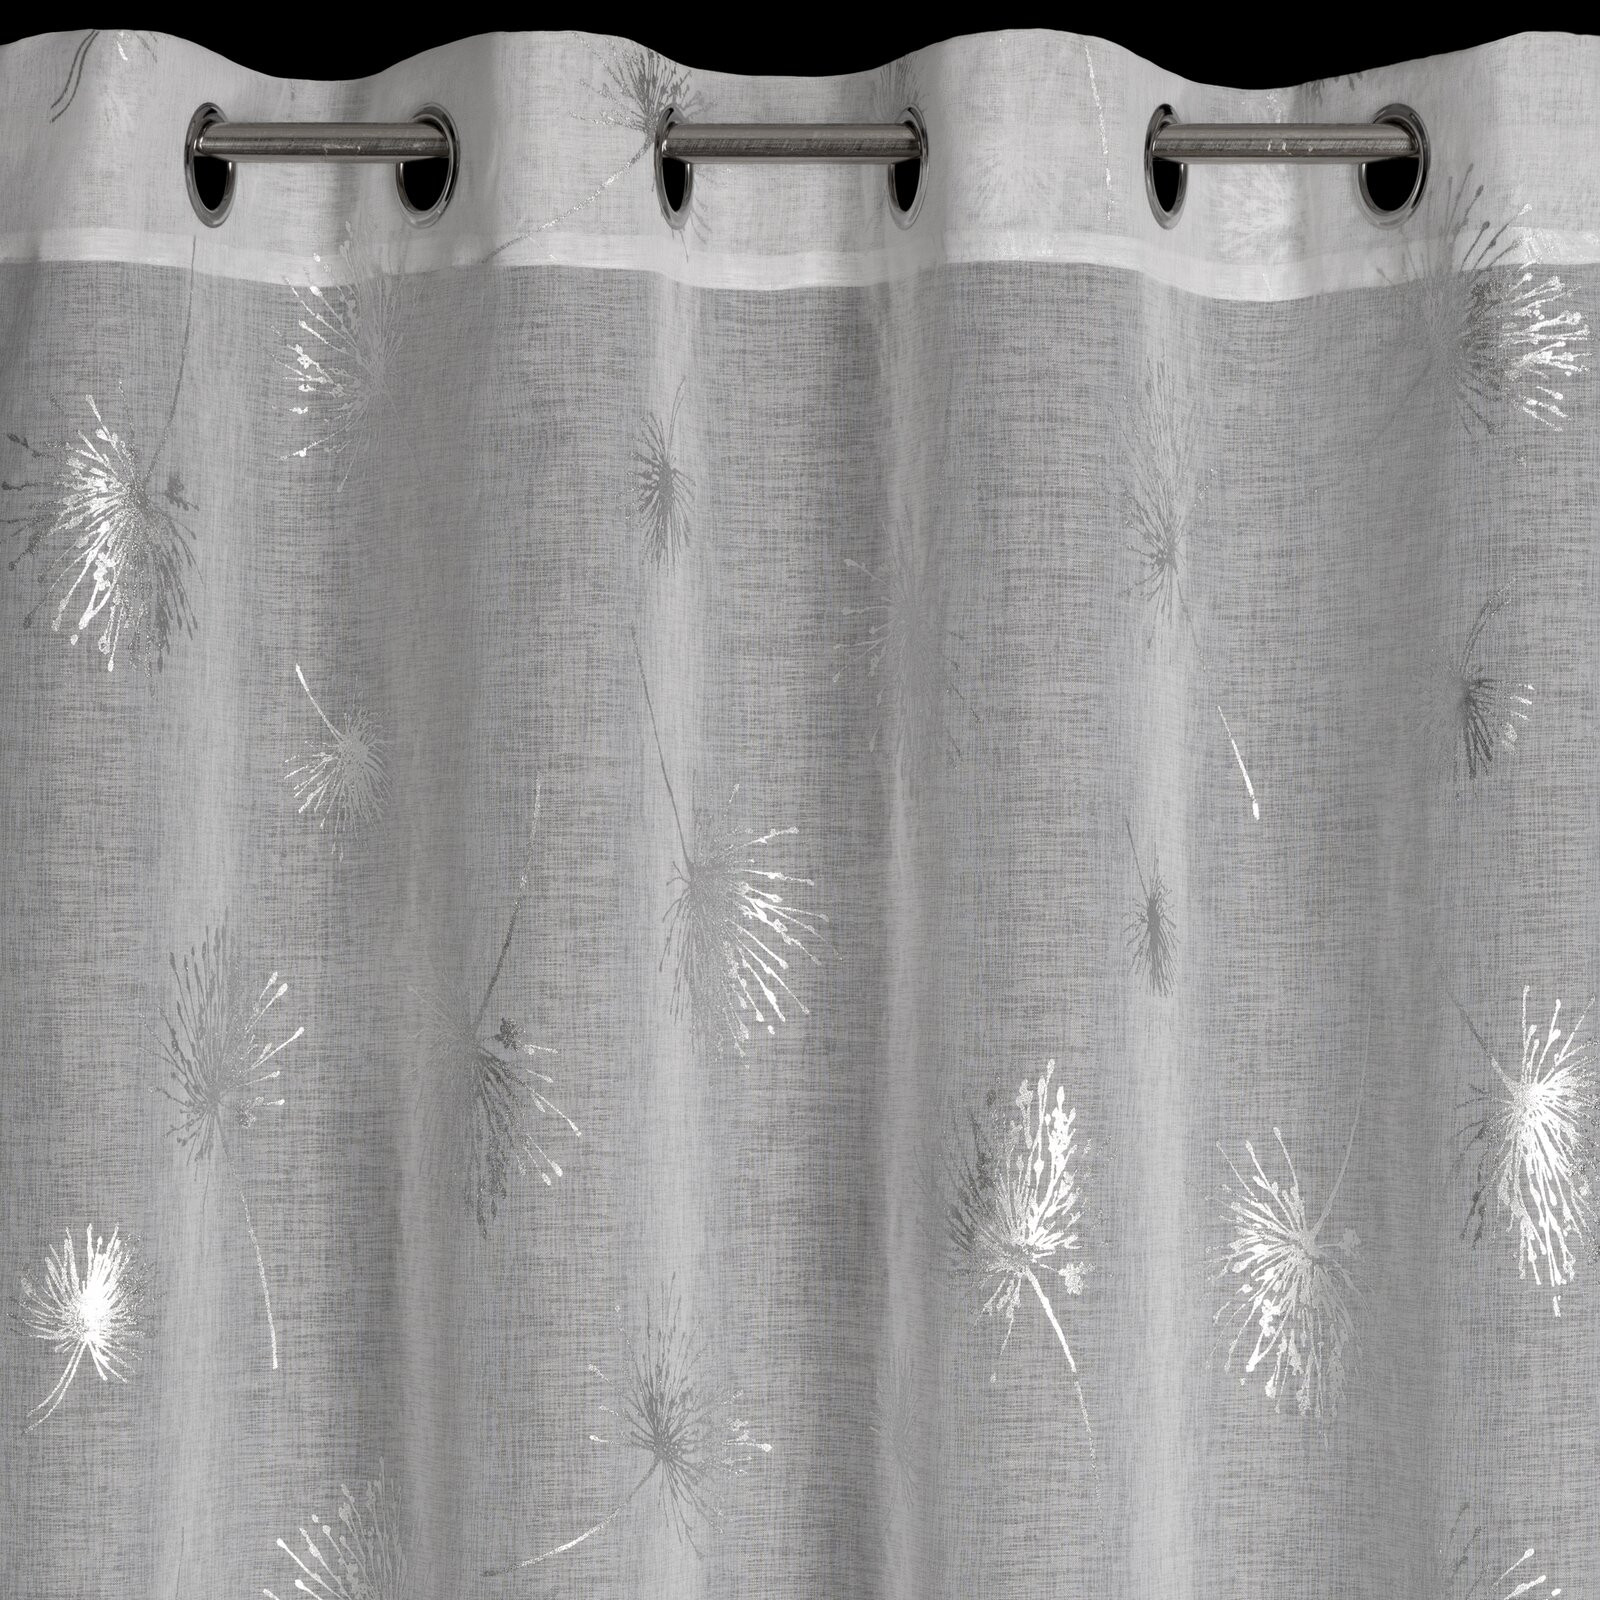 Hotová záclona APRIL bílá / stříbrná - na průchodkách